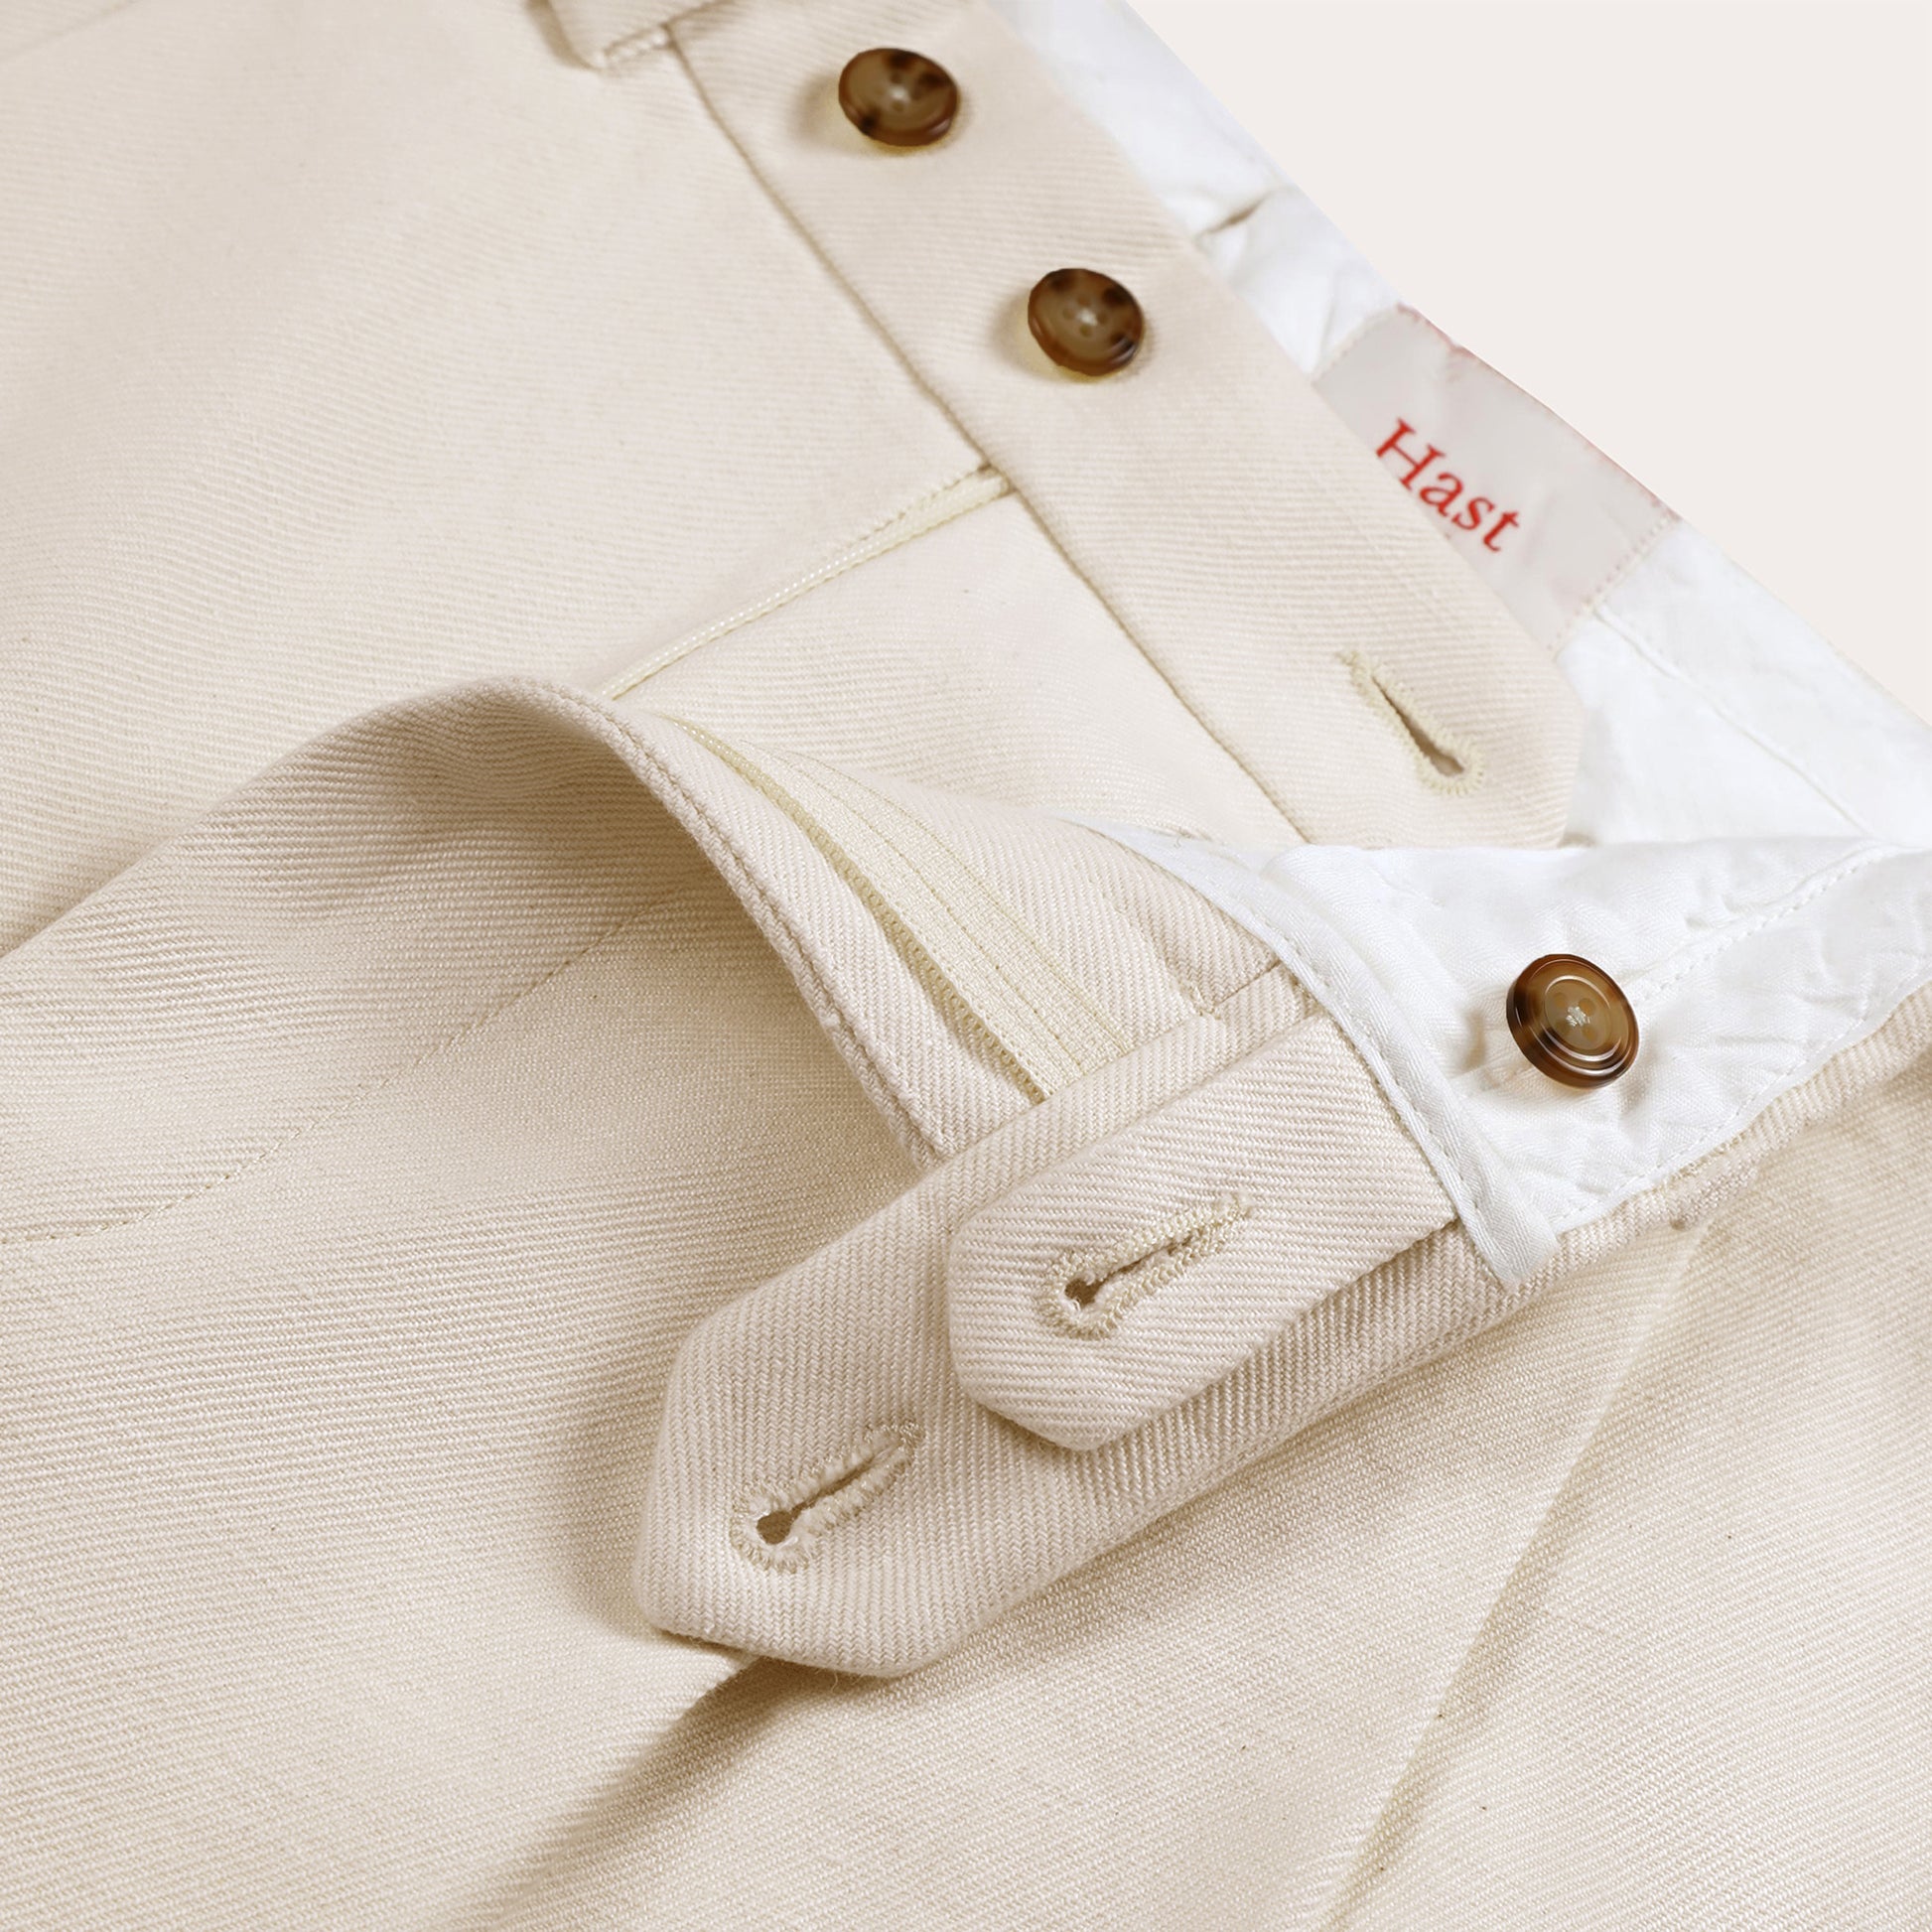 Pantalon à double plis en coton et lin écru